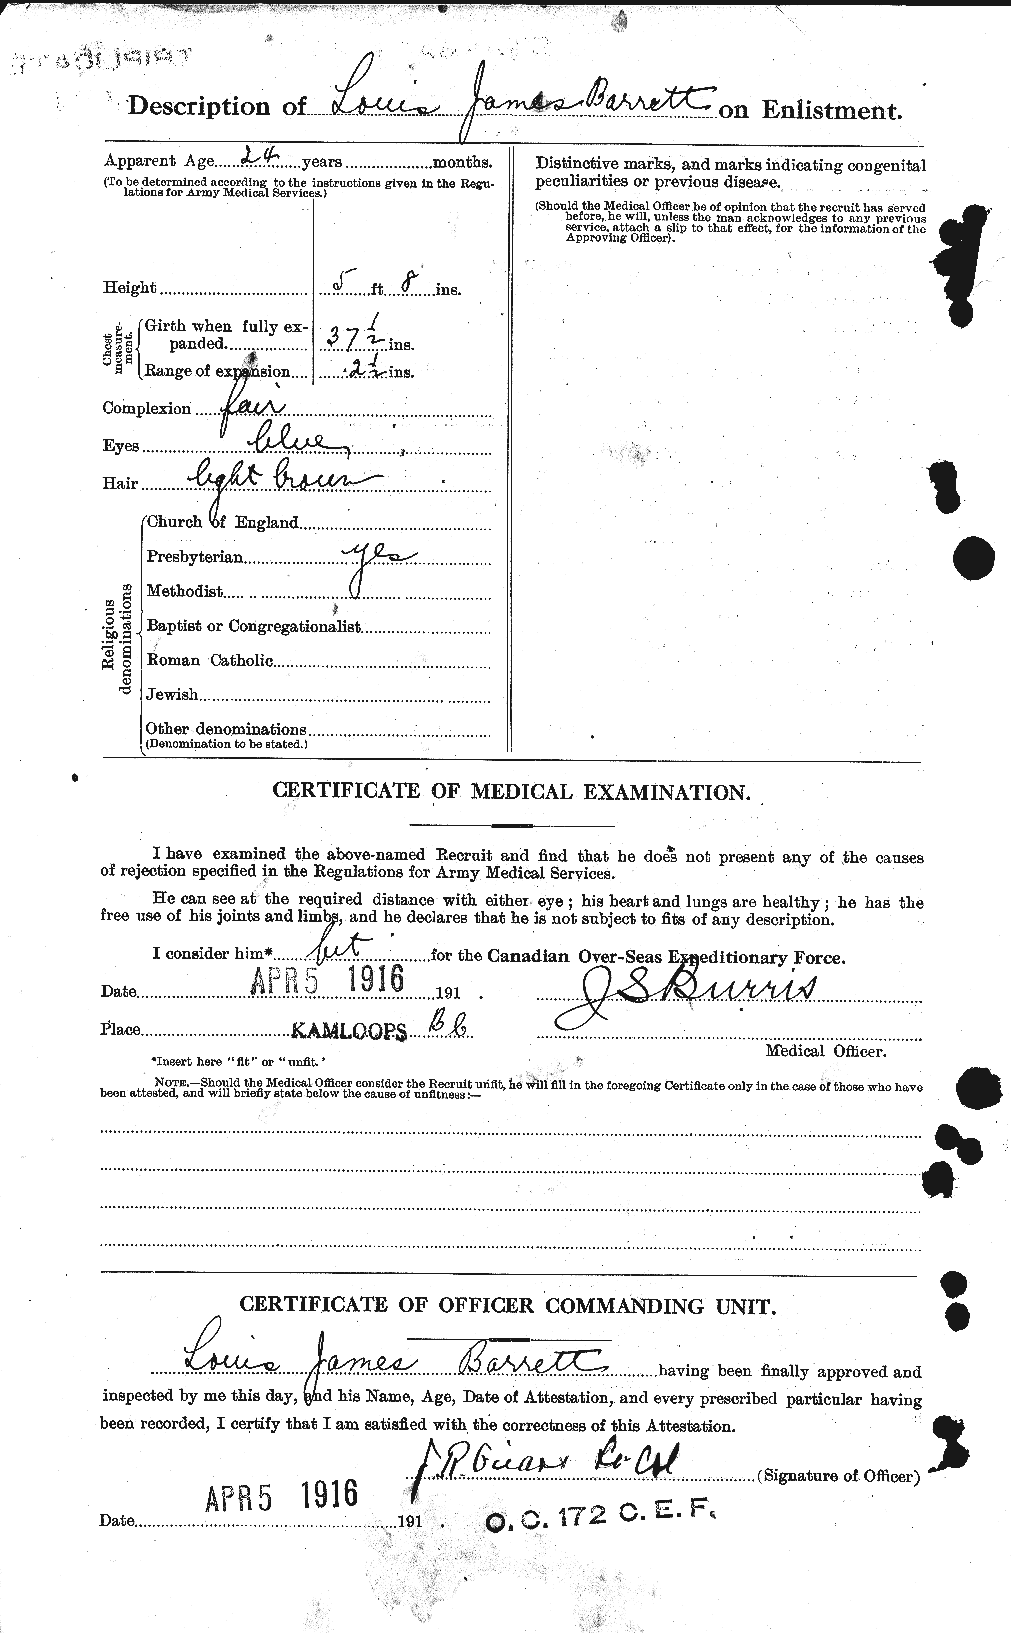 Dossiers du Personnel de la Première Guerre mondiale - CEC 220220b